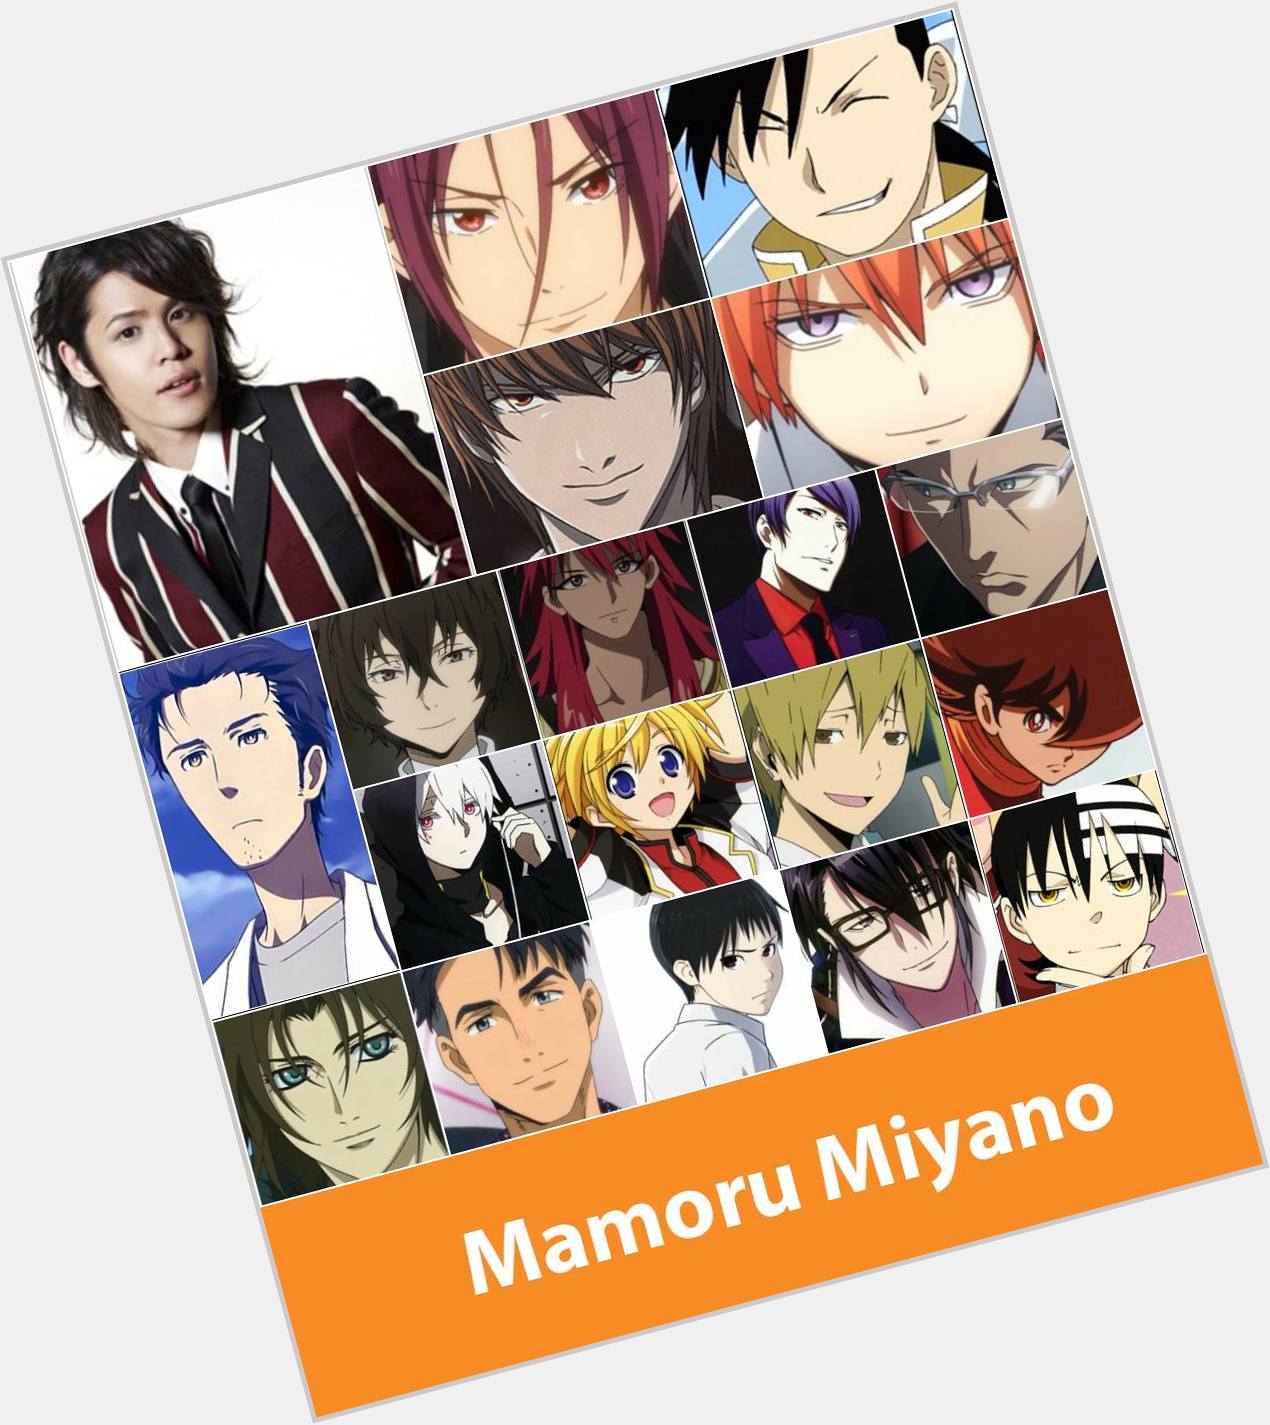  June 8 - Happy Birthday Mamoru Miyano! 